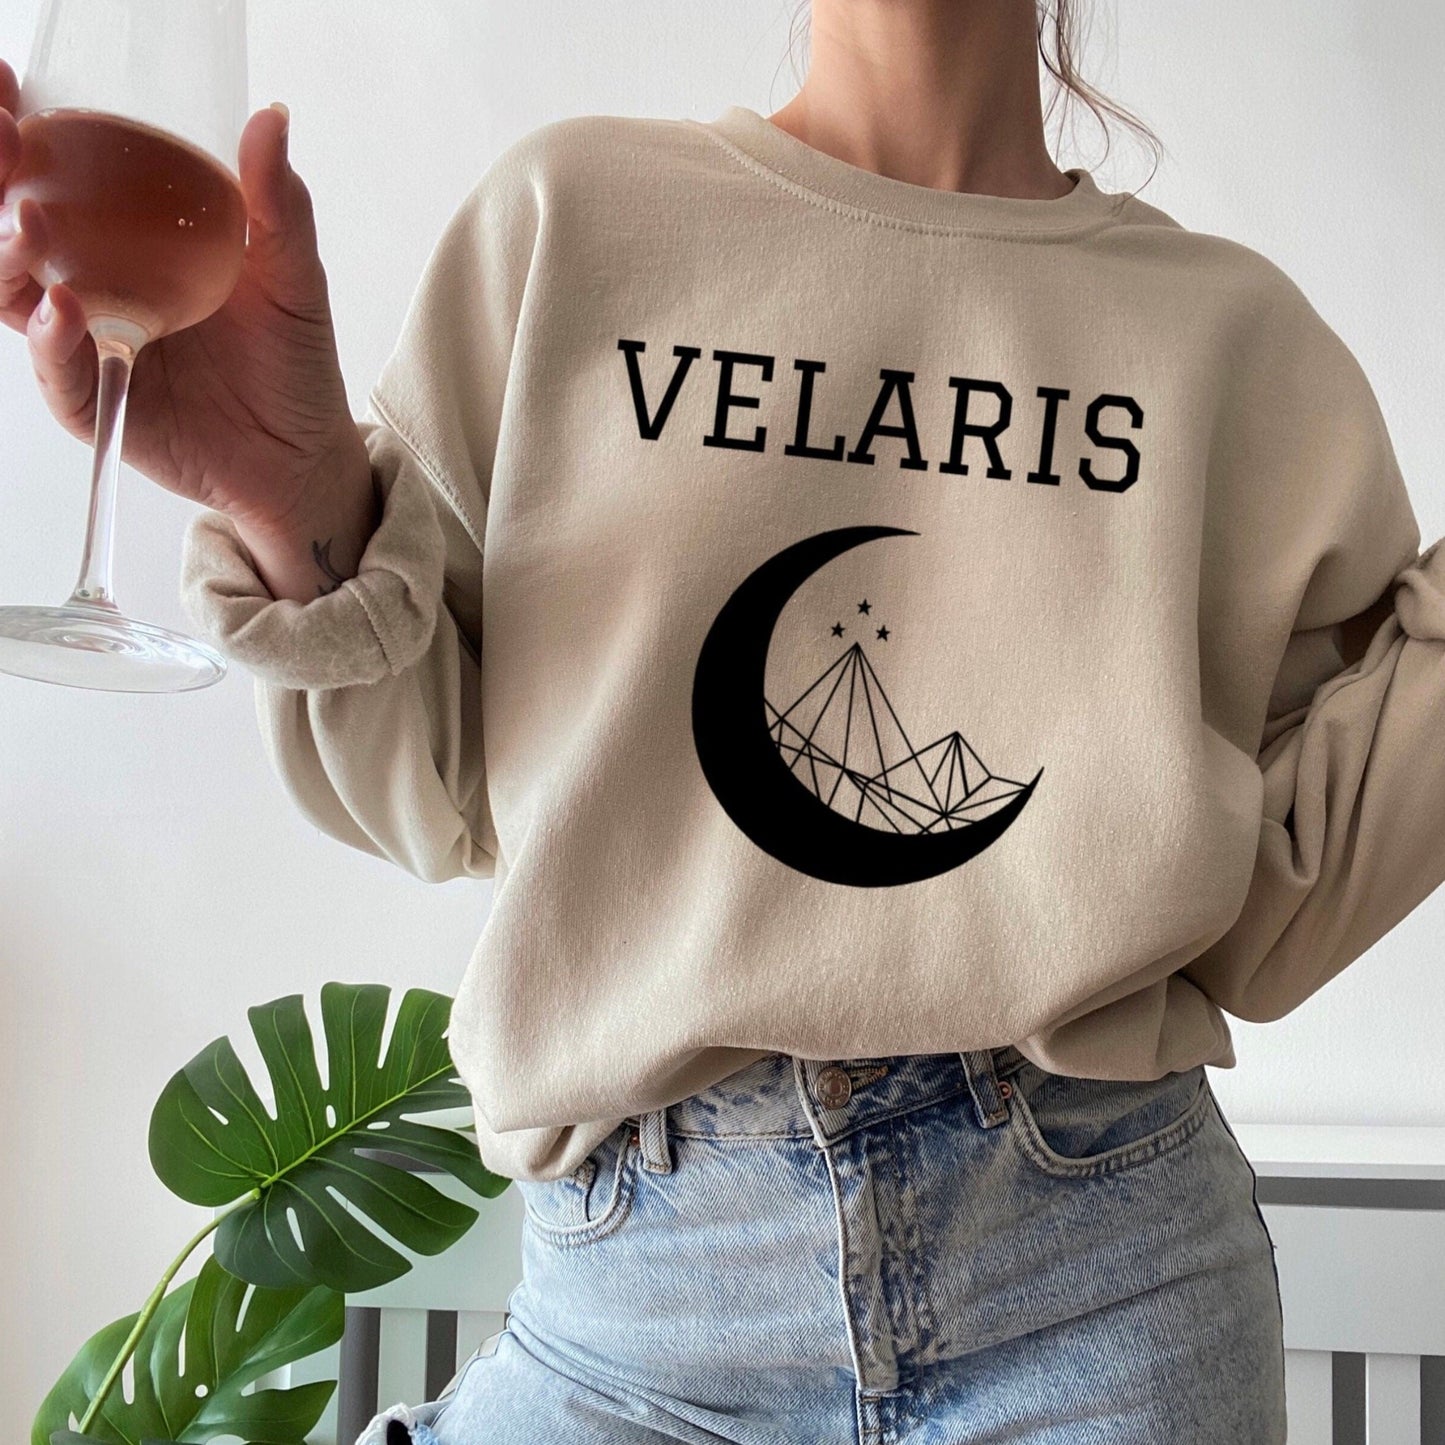 ACOTAR Velaris sweatshirt  - officially licensed by Sarah J. Maas